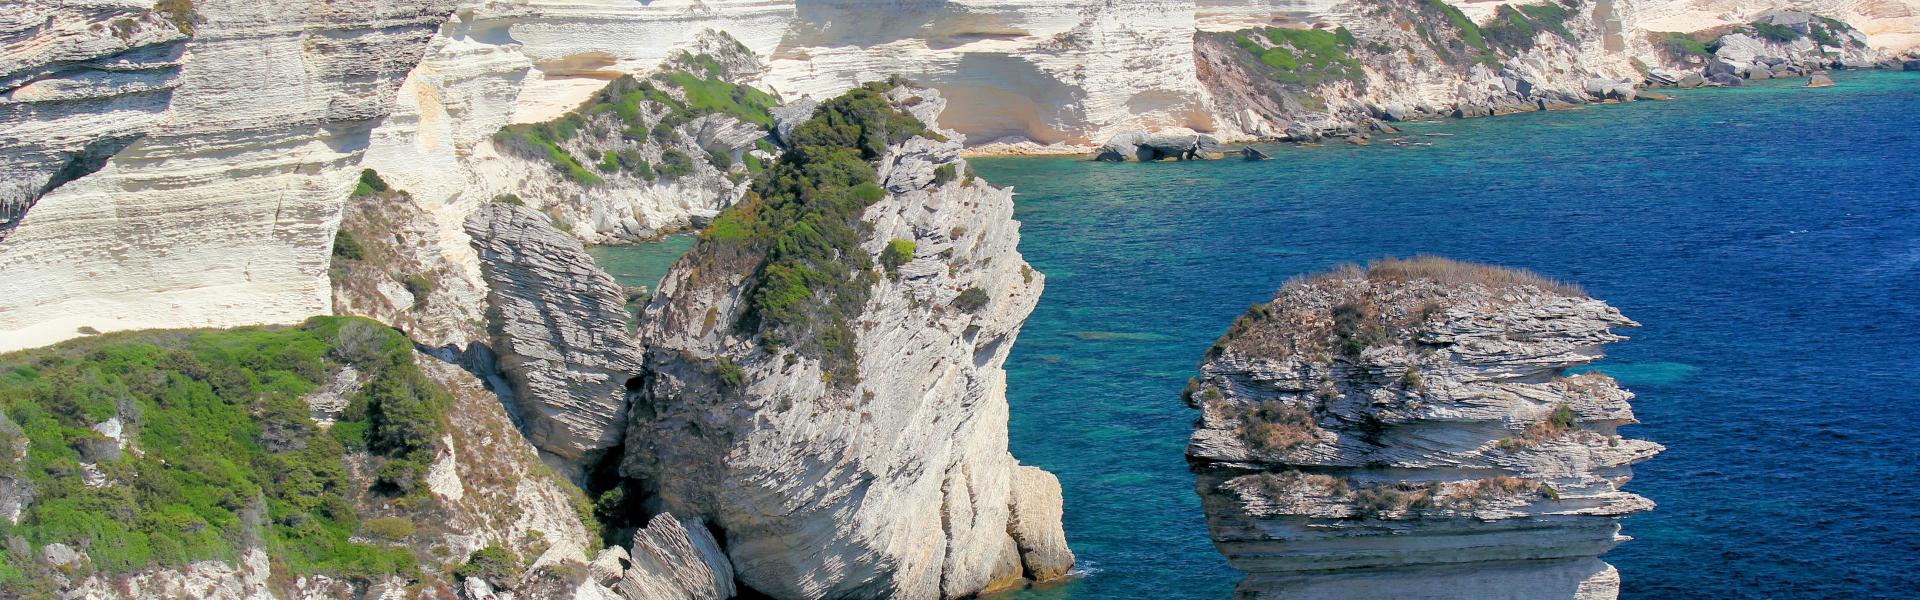 Location de vacances à Belgodère - Haute-Corse - Amivac